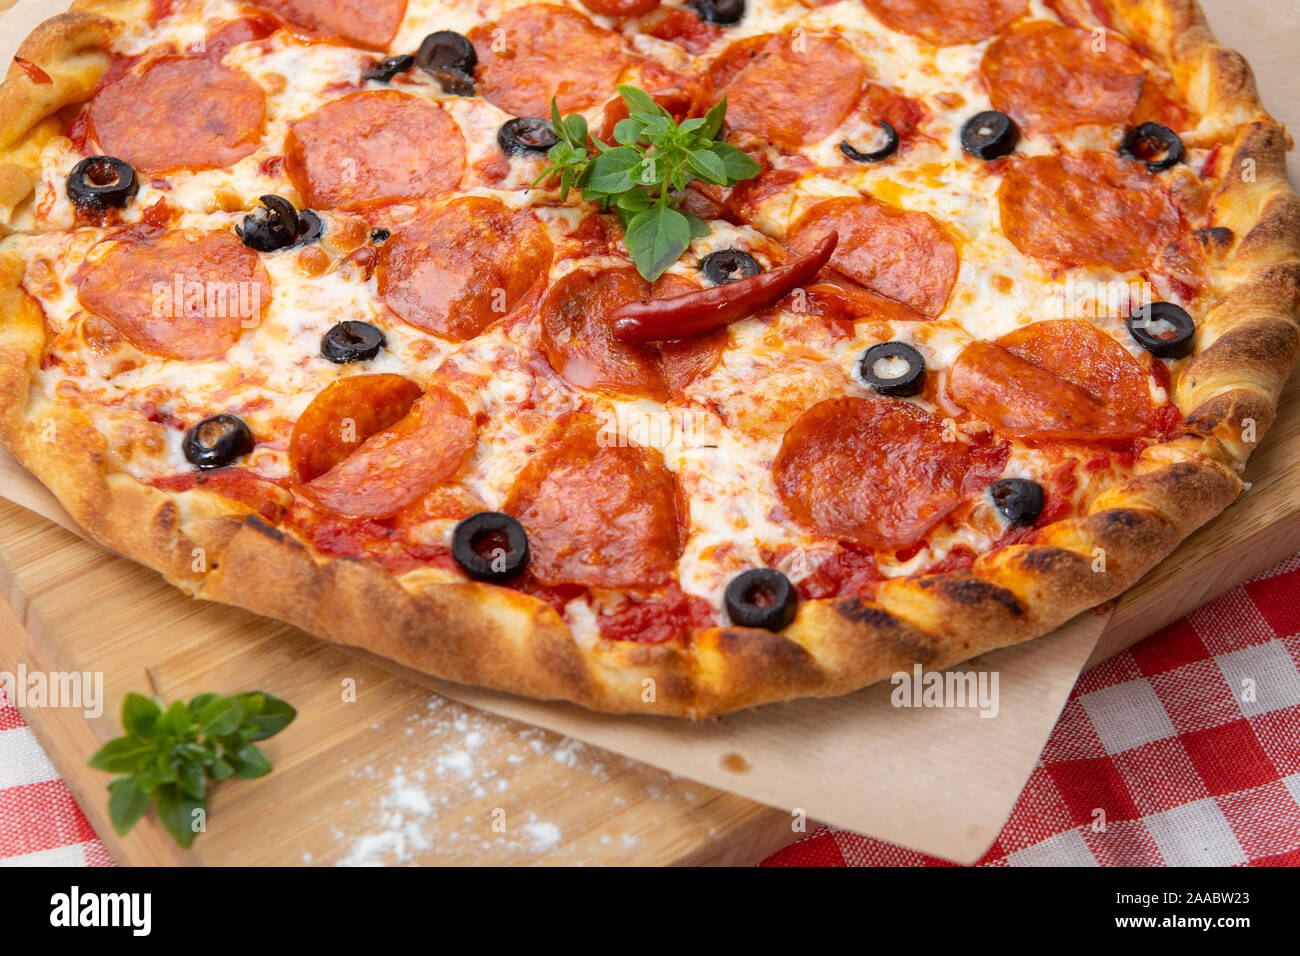 Pizza au pepperoni, close-up avec divers ingrédients décoré avec du basilic, un assortiment de fast food italien traditionnel Banque D'Images